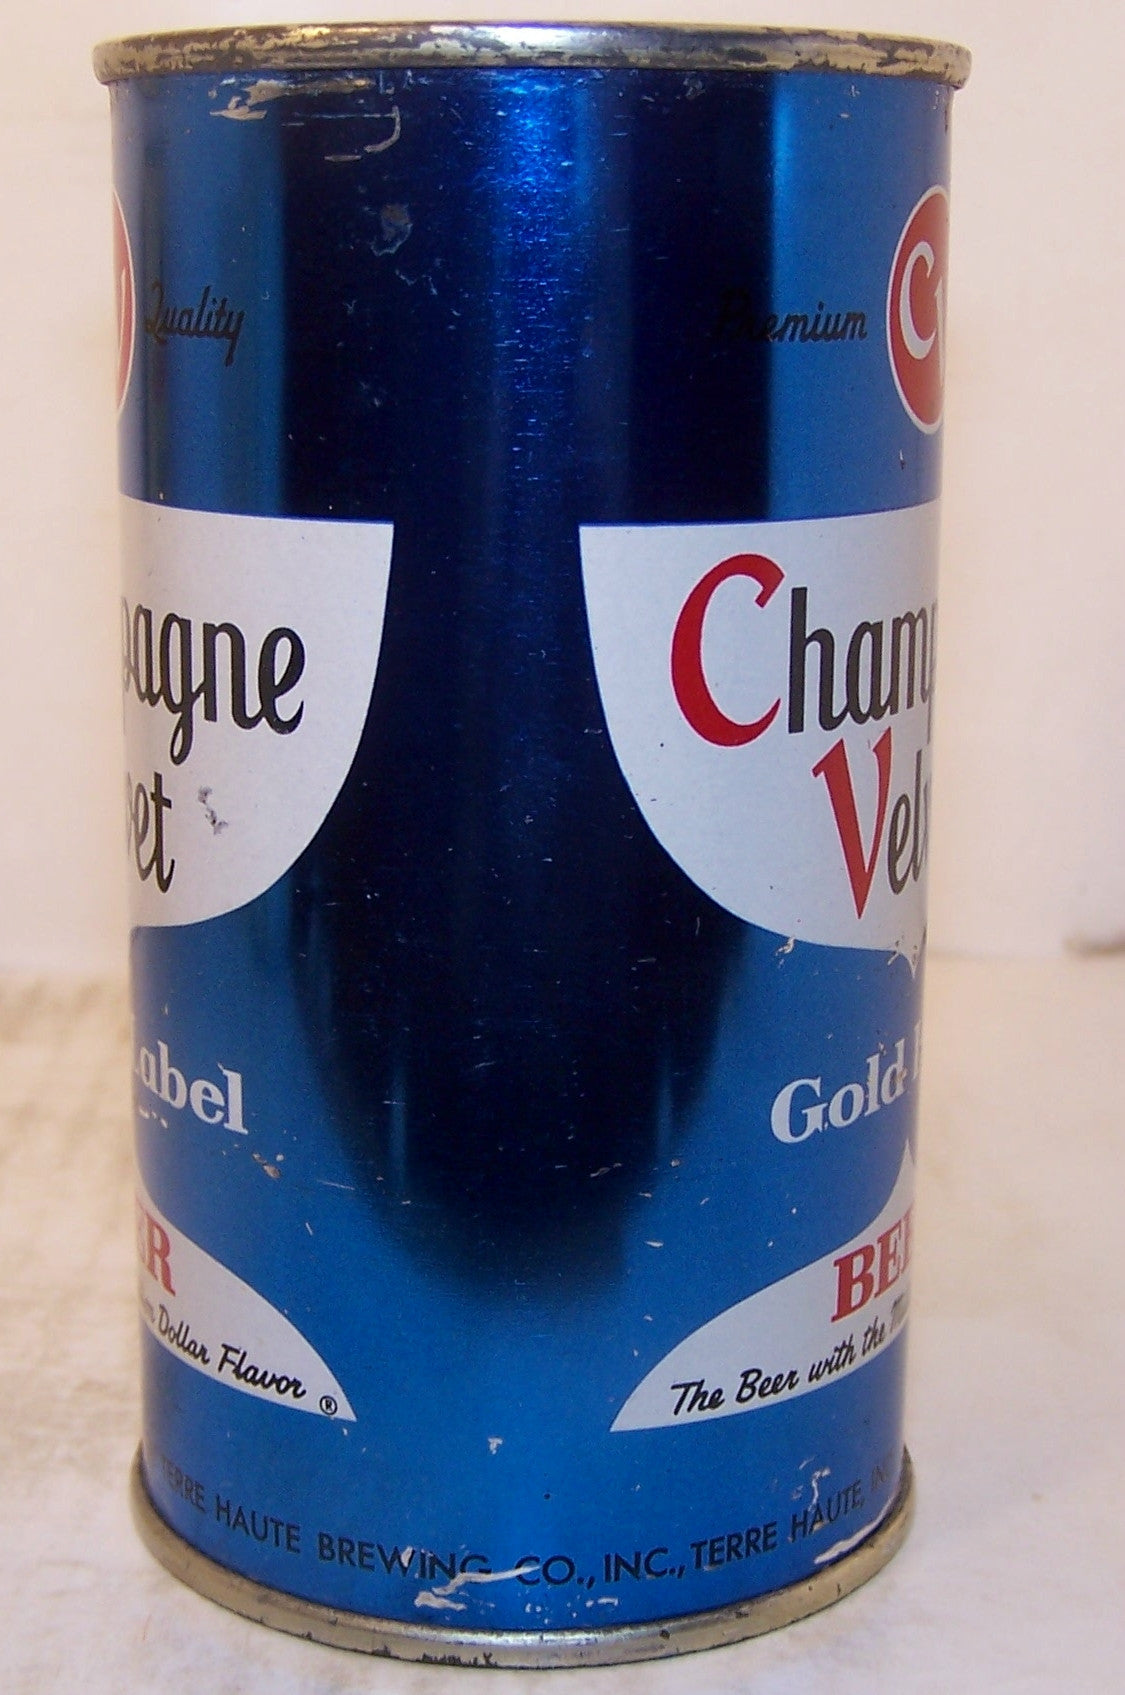 Champagne Velvet Dark Blue, USBC 48-40, Grade 1/1- Sold on 02/25/17